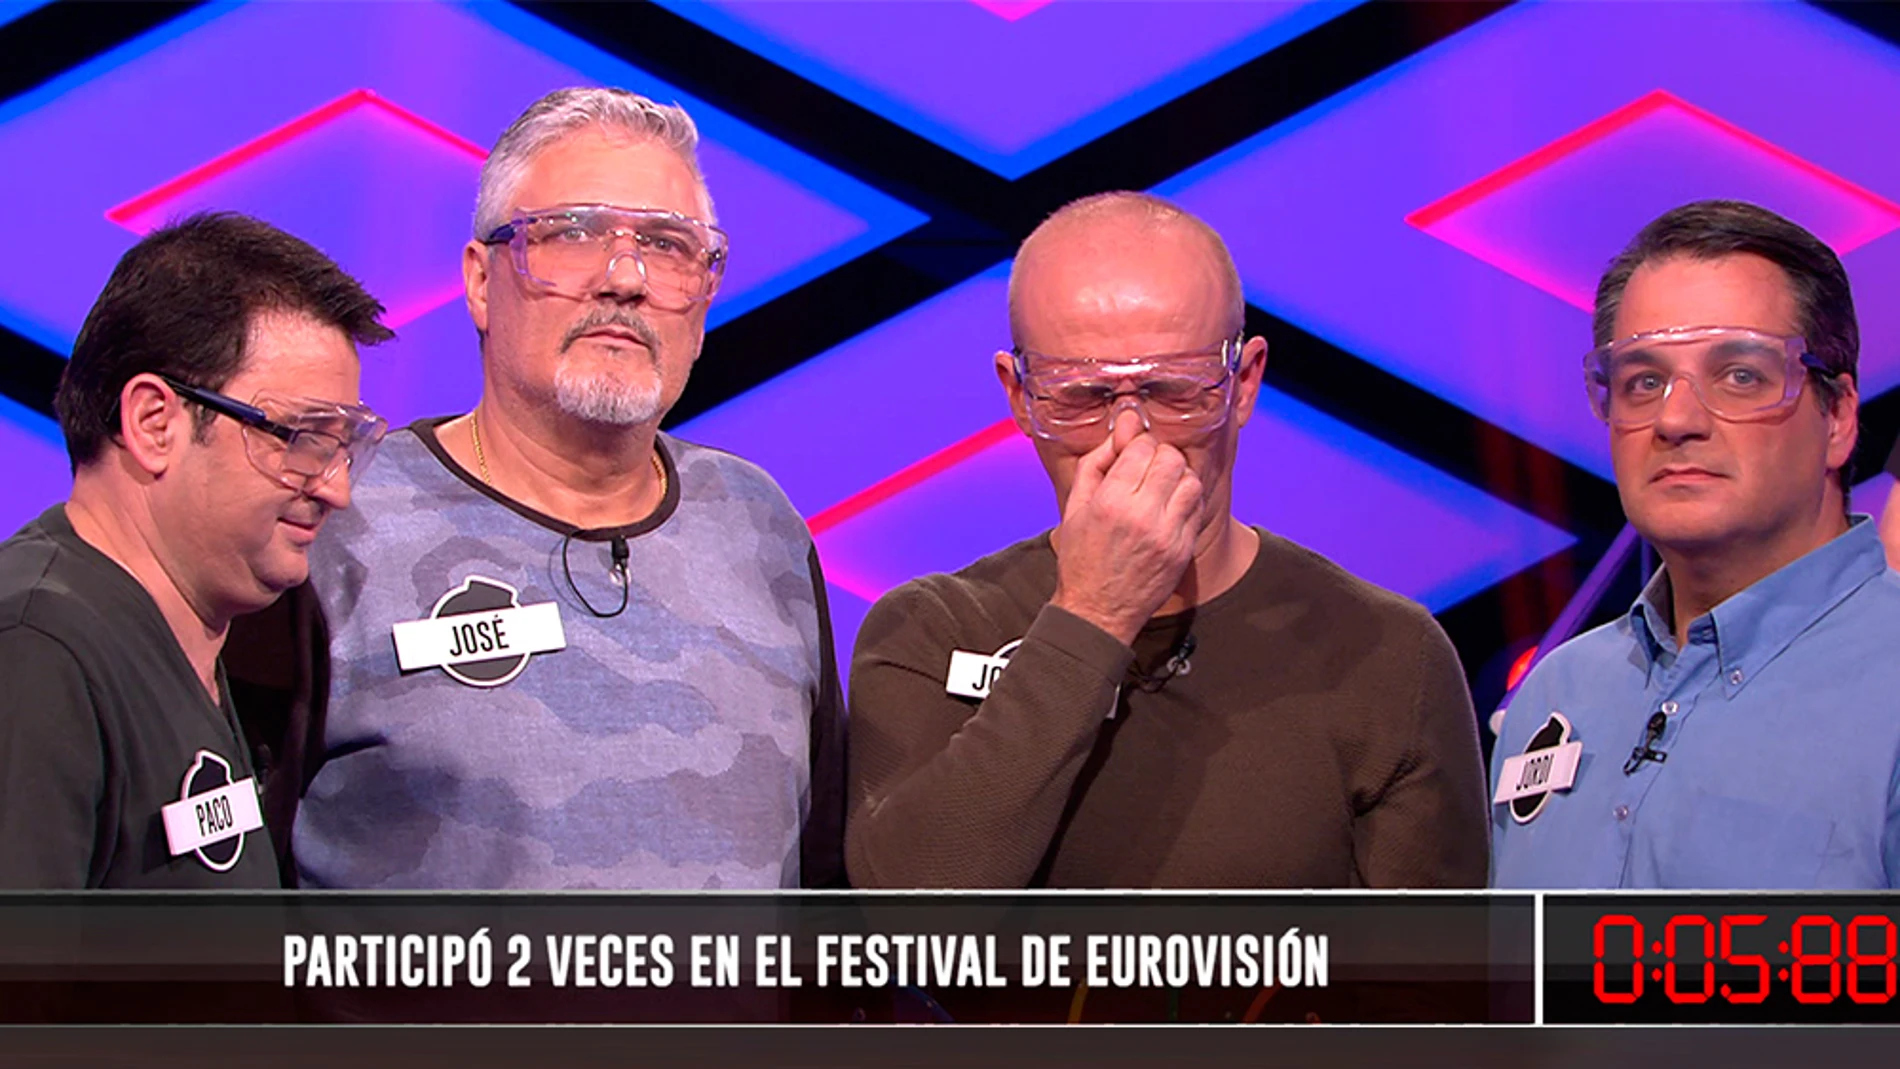 ¿Qué artista participó dos veces en el Festival de Eurovisión? 